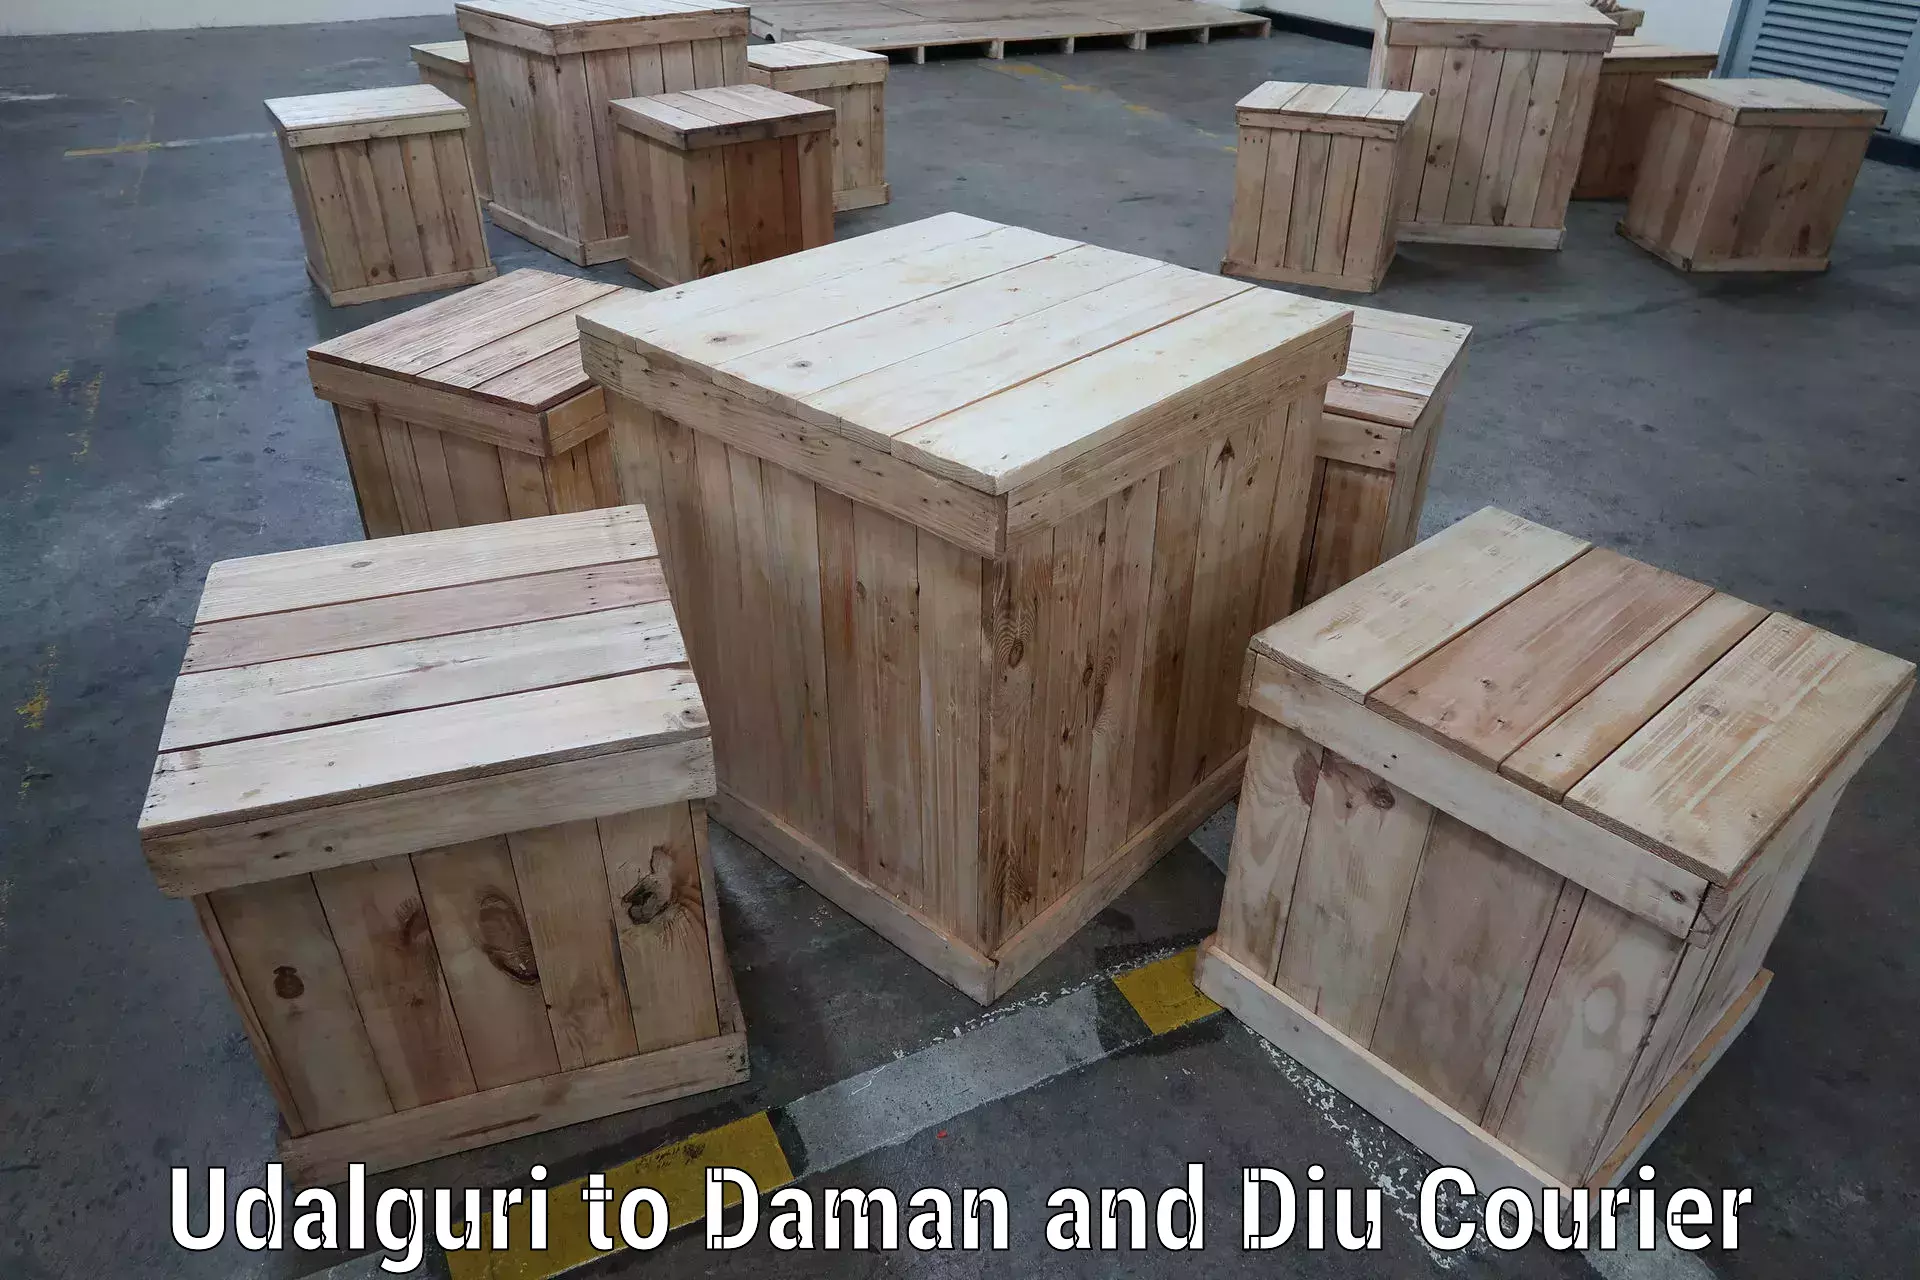 High-performance logistics Udalguri to Daman and Diu